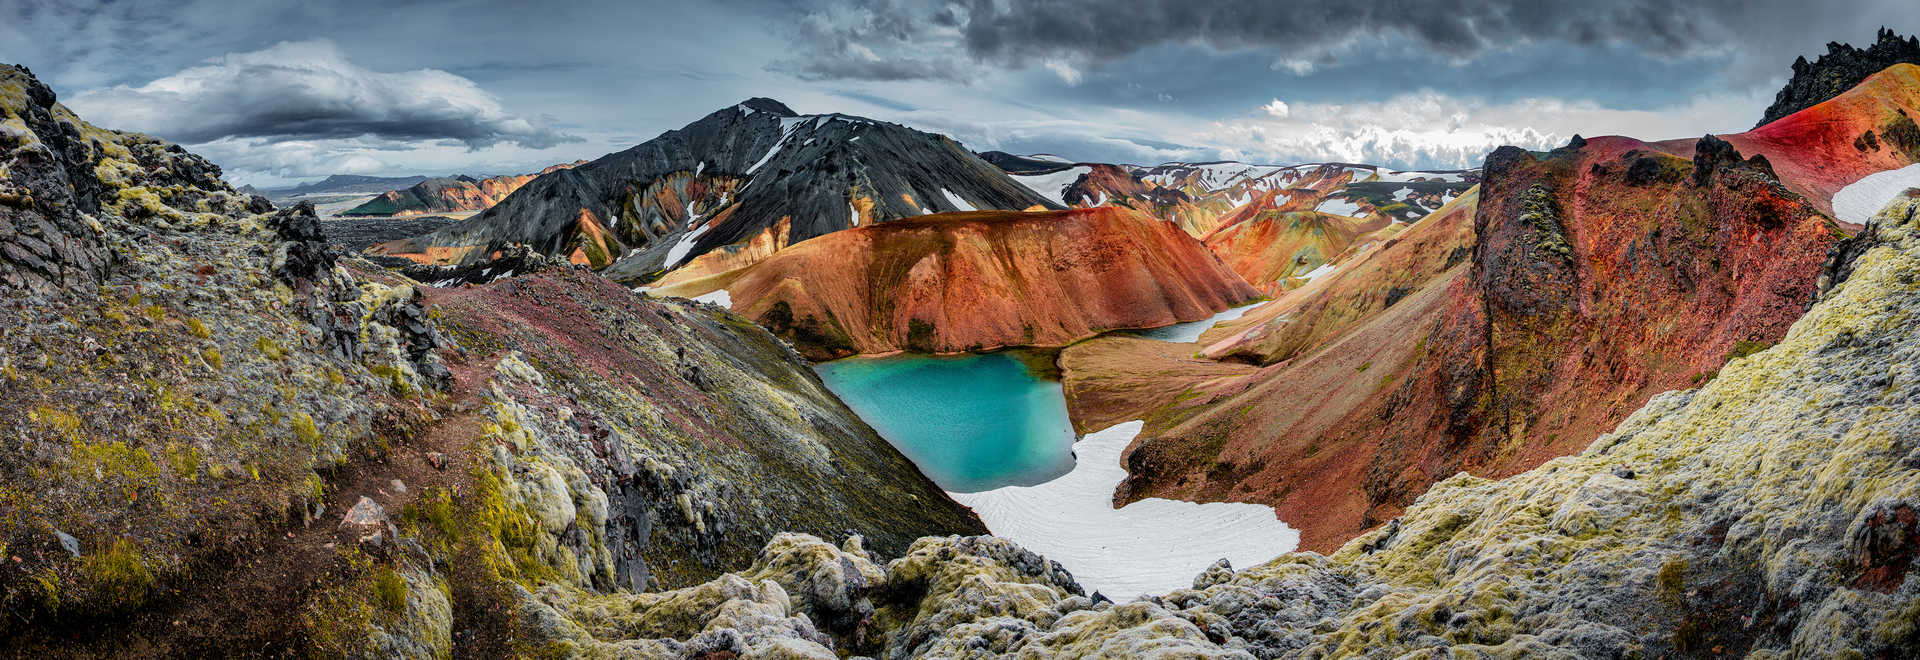 Montagnes volcaniques rhyolites colorées de Landmannalaugar, Islande